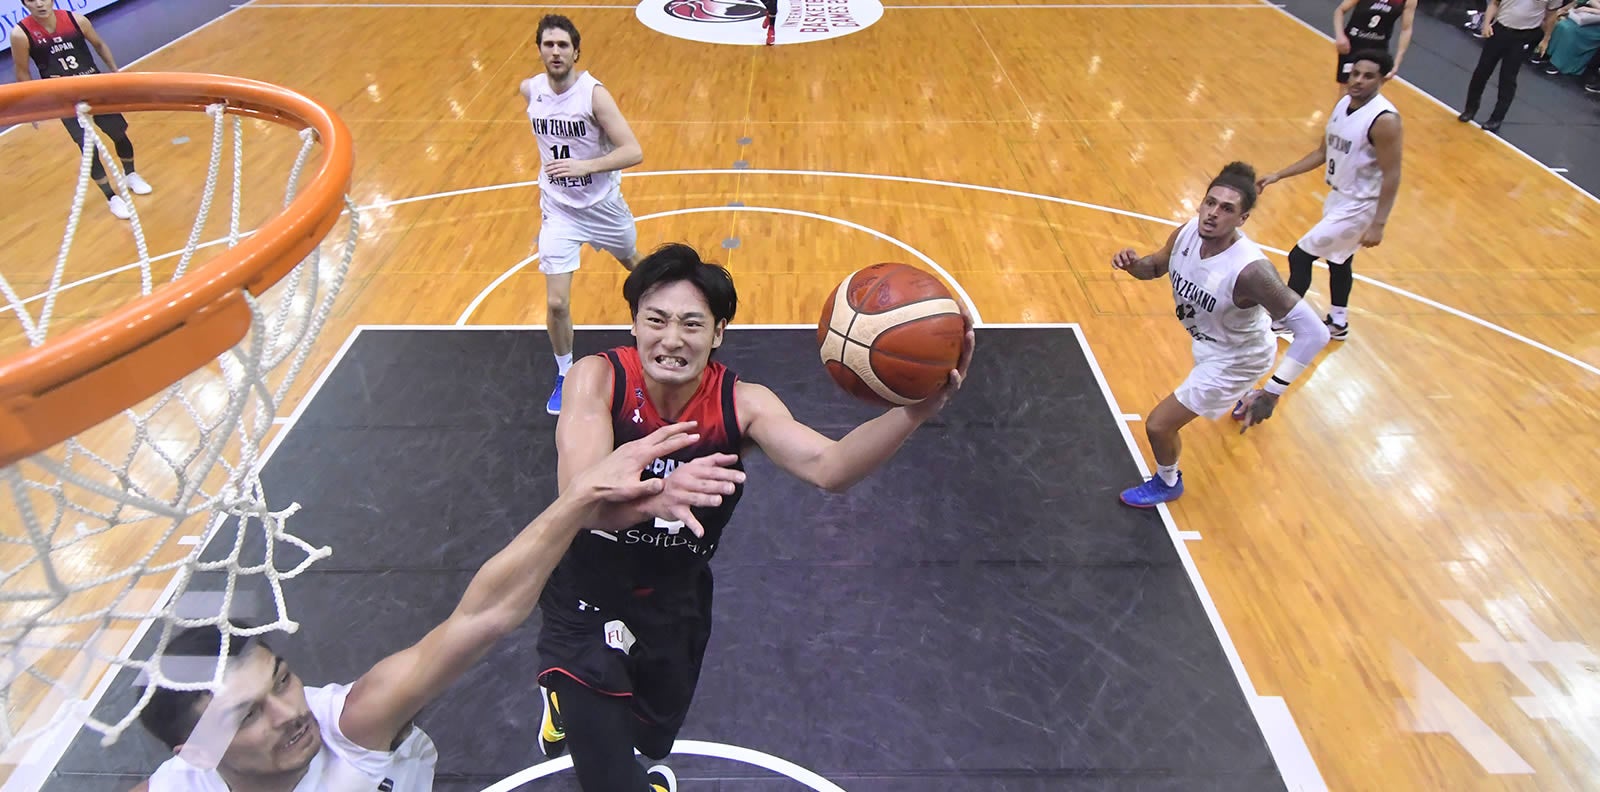 バスケットボール男子日本代表応援キャンペーン